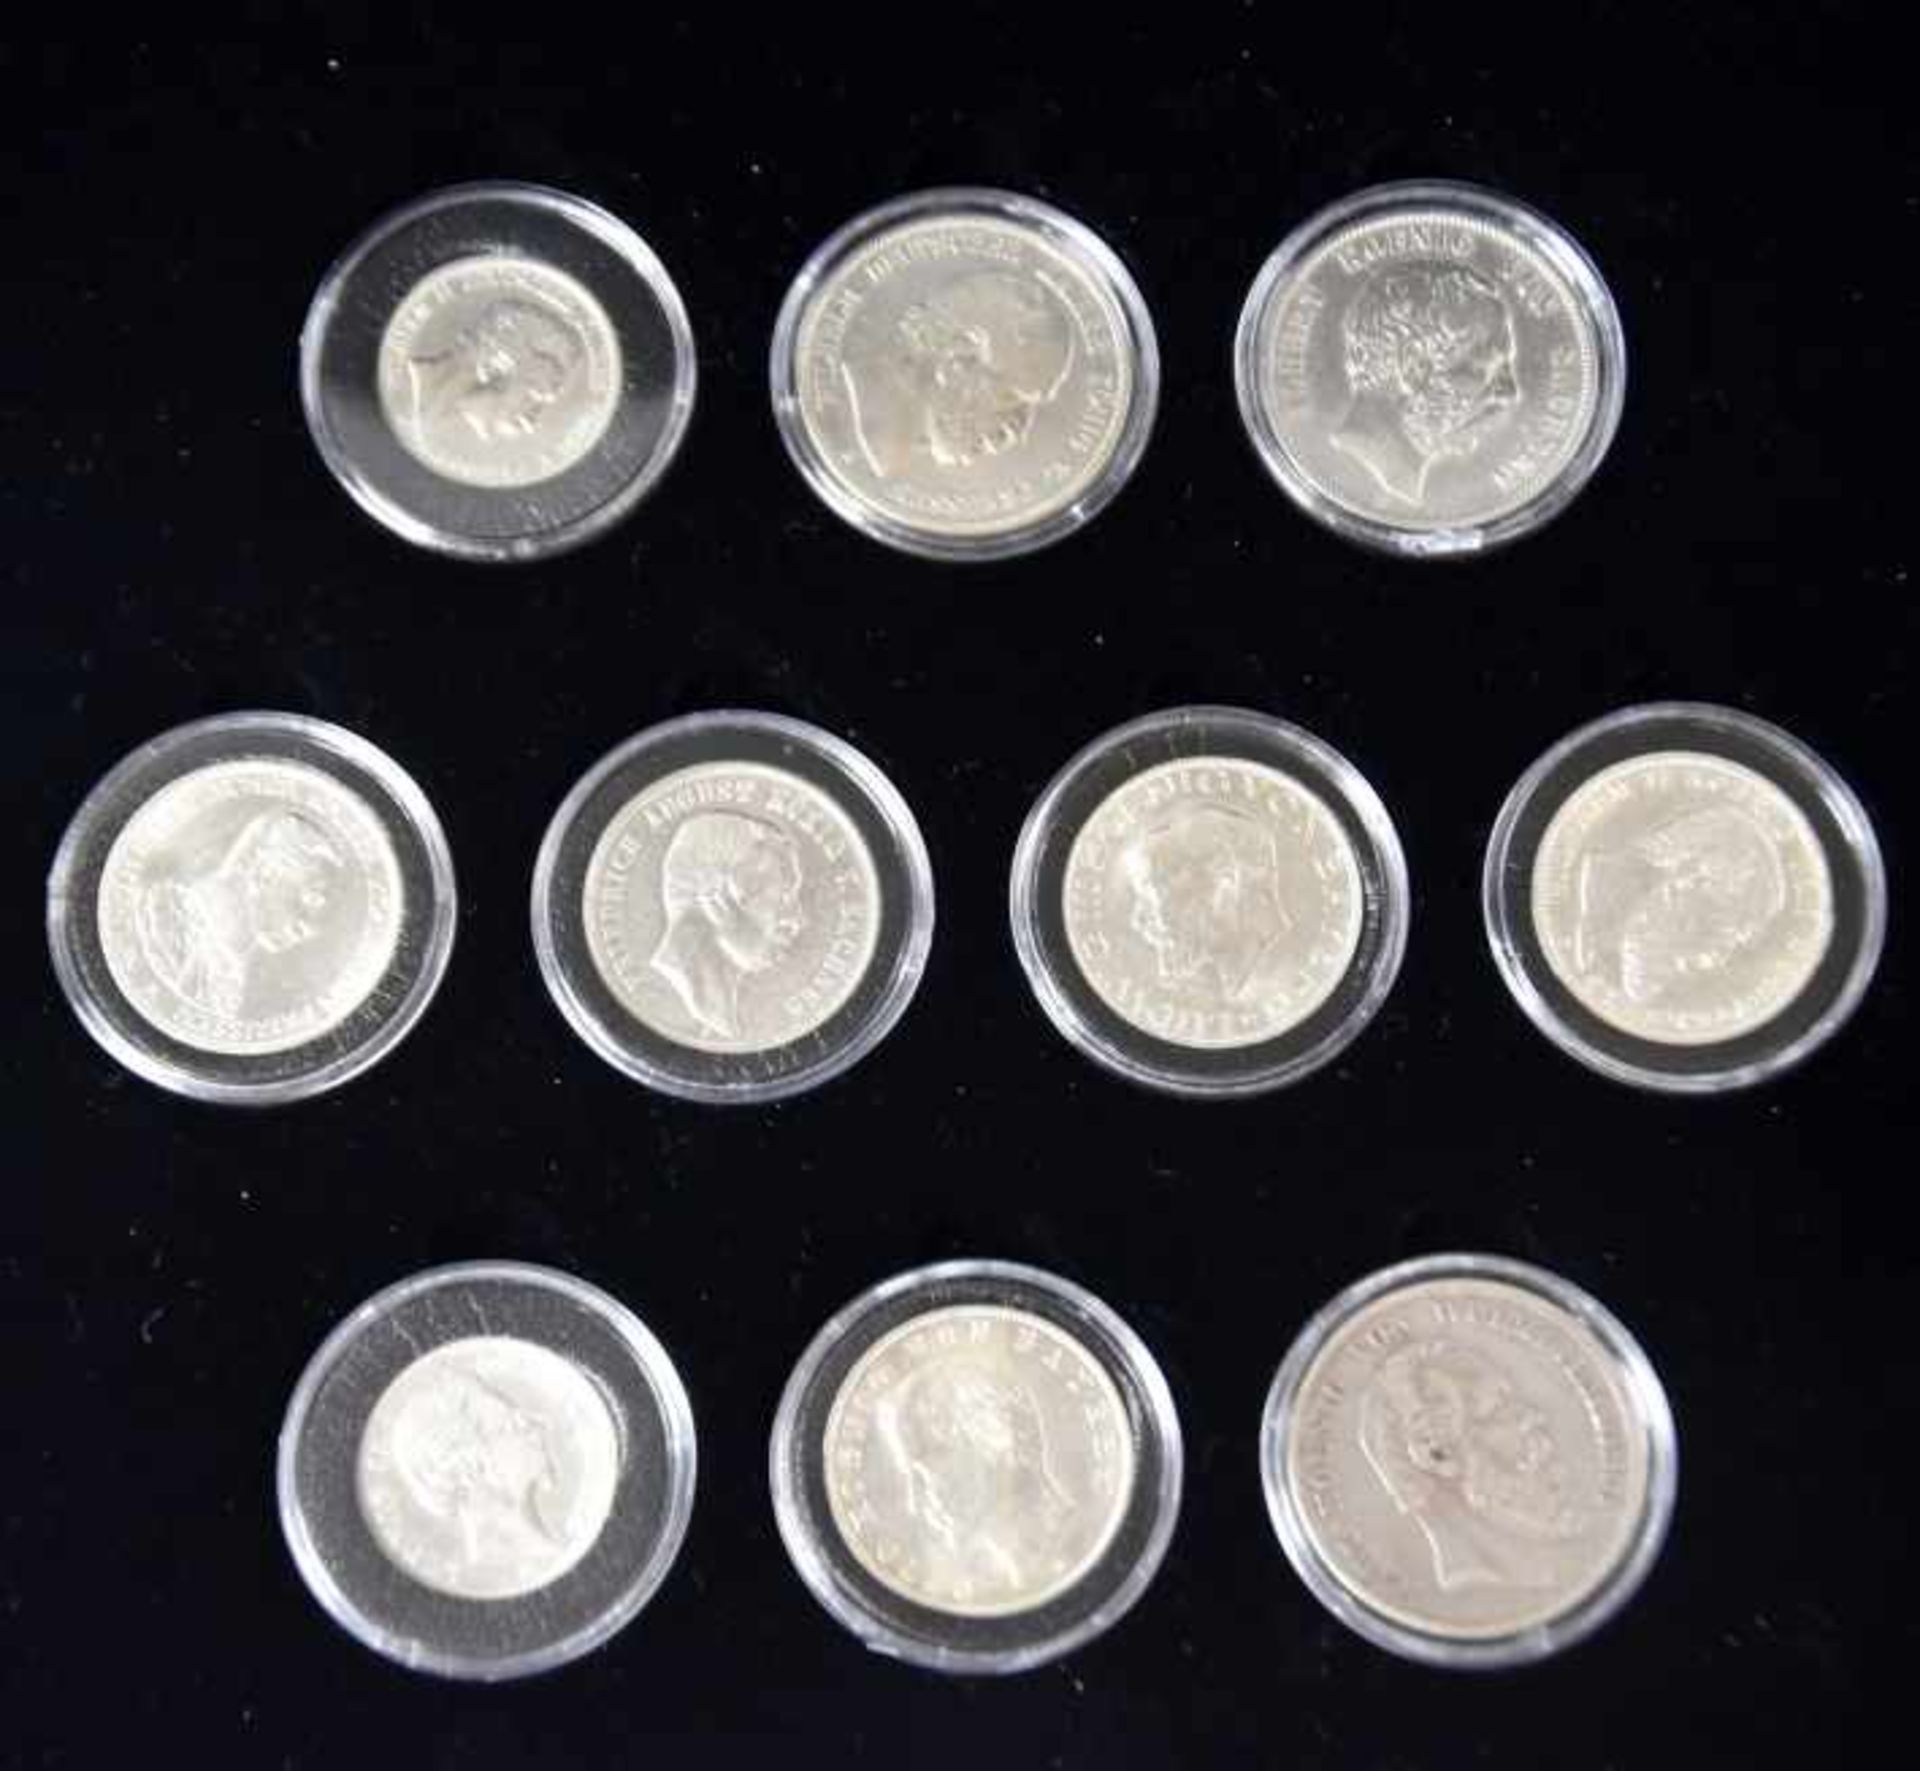 KLEINE MÜNZSAMMLUNG Silbermünzen Deutsches Reich: 3x5 Mark, 5x3 Mark, 2x2 Mark, Preussen, Bayern, - Bild 2 aus 3